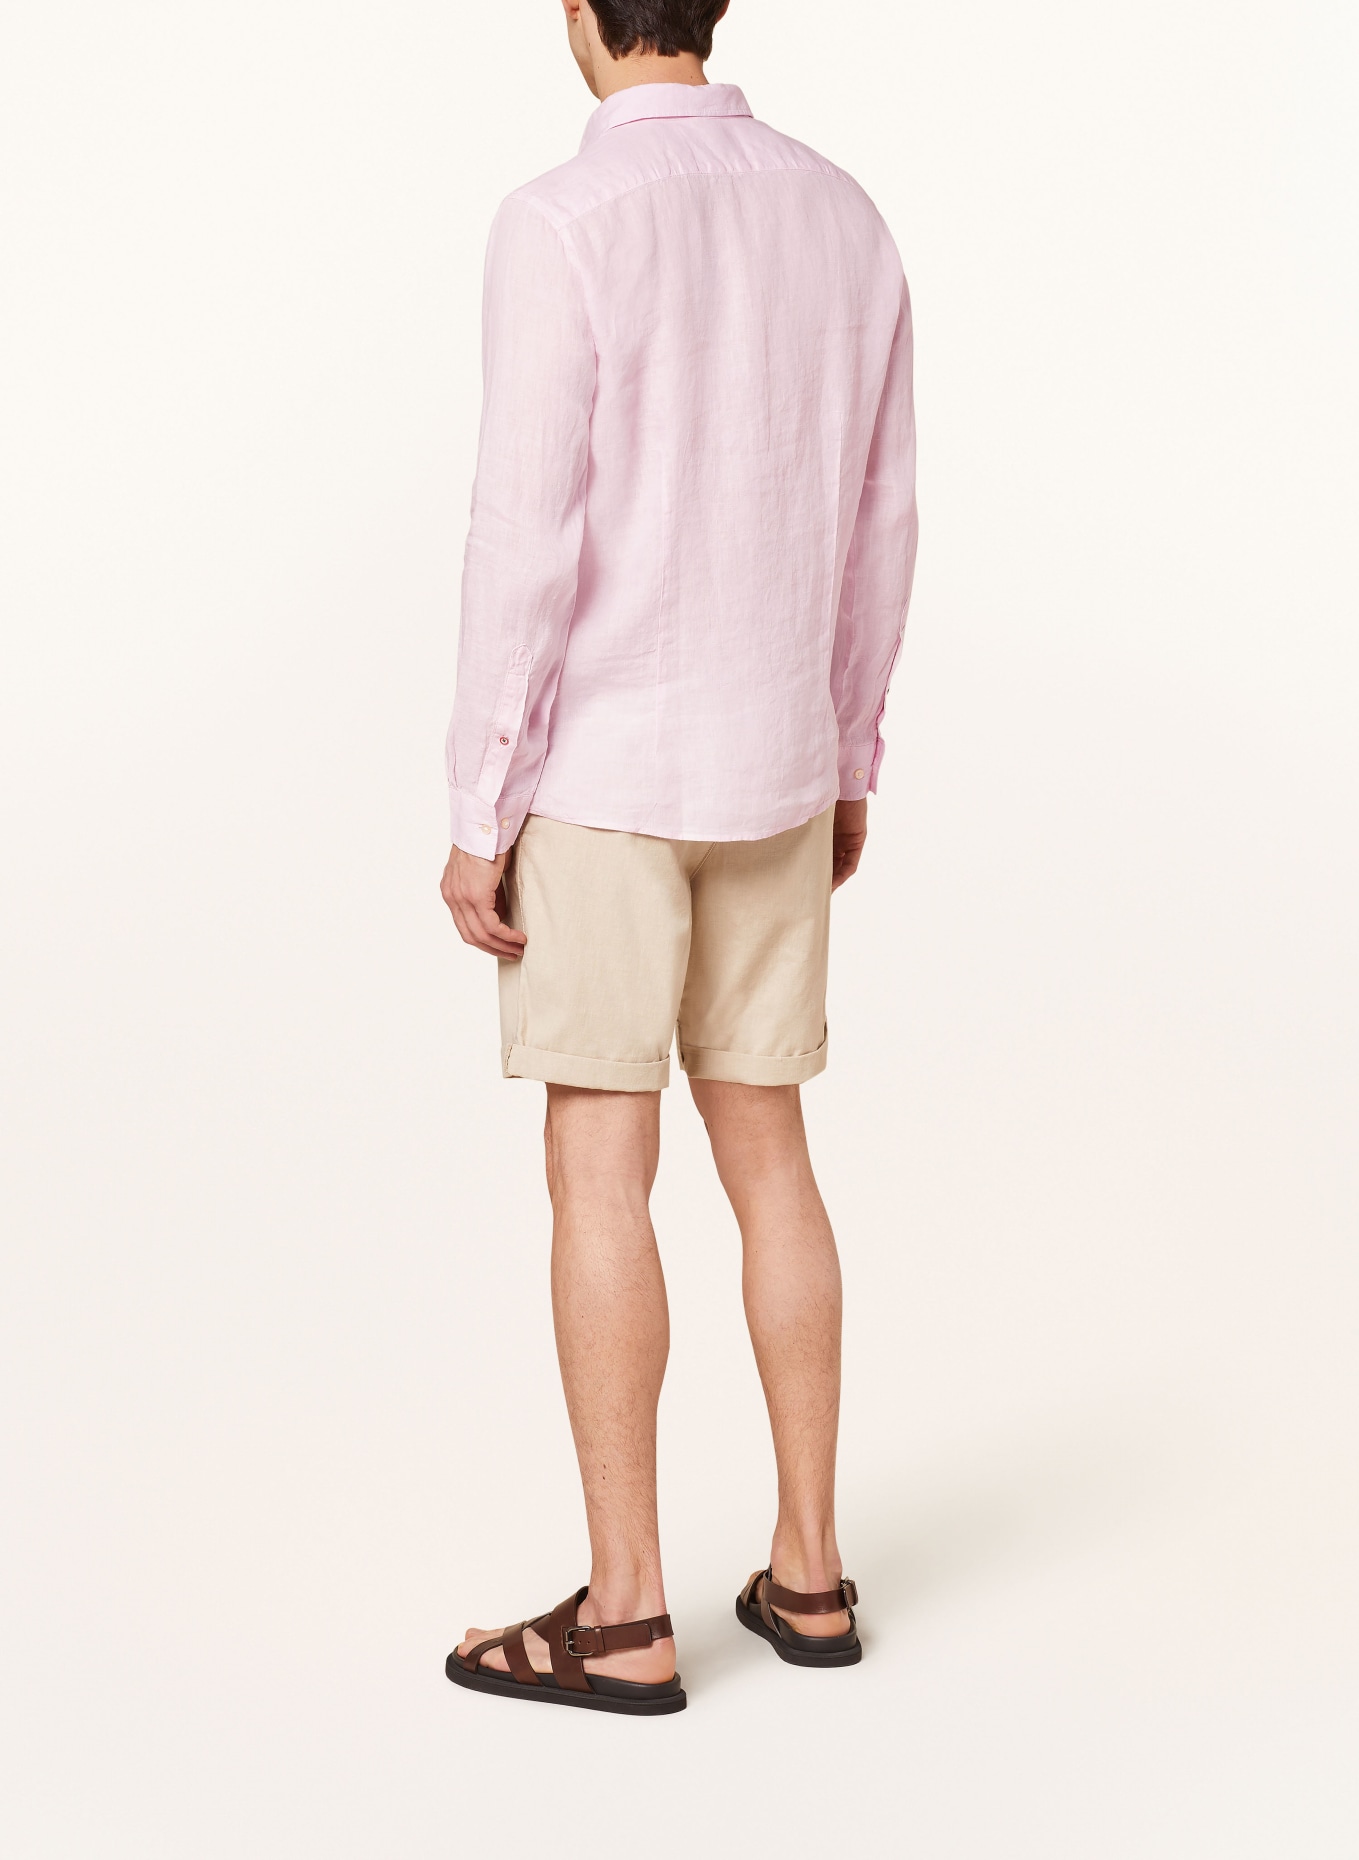 CINQUE Linen shirt CISTEVEN regular fit, Color: PINK (Image 3)